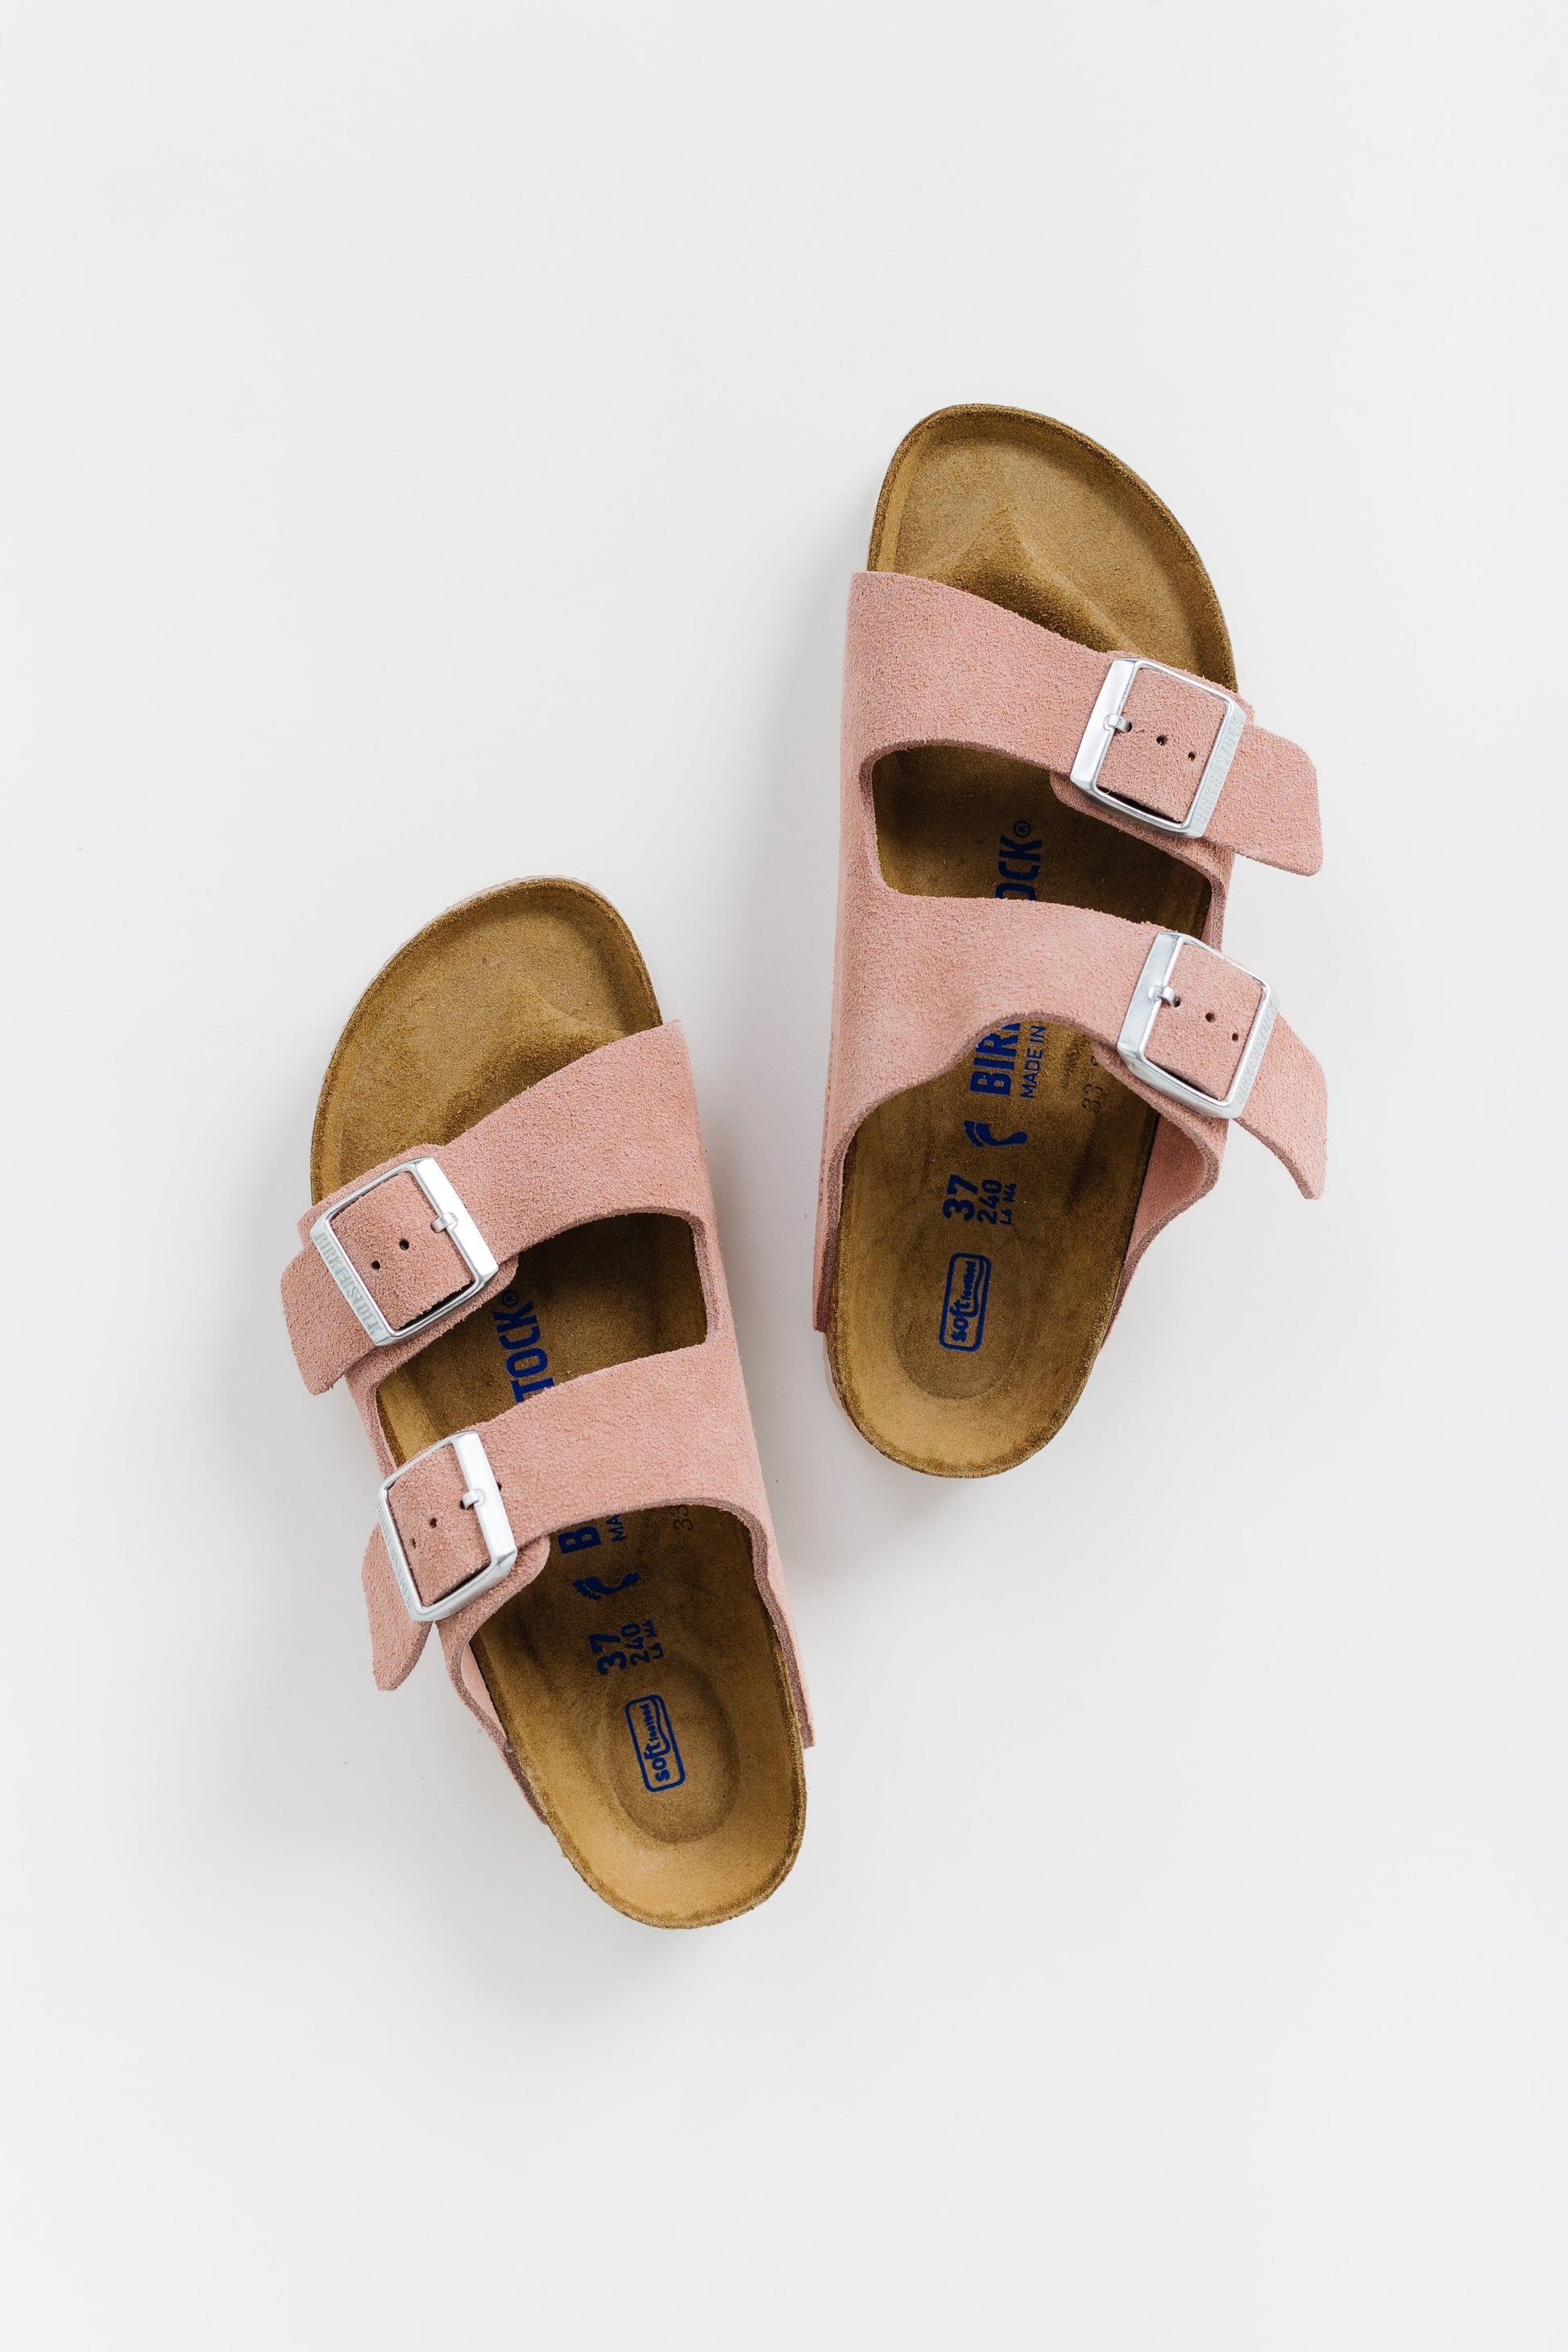 Birkenstock - Arizona Soft Footbed WOMEN'S SANDALS Birkenstock Pink Clay 36 